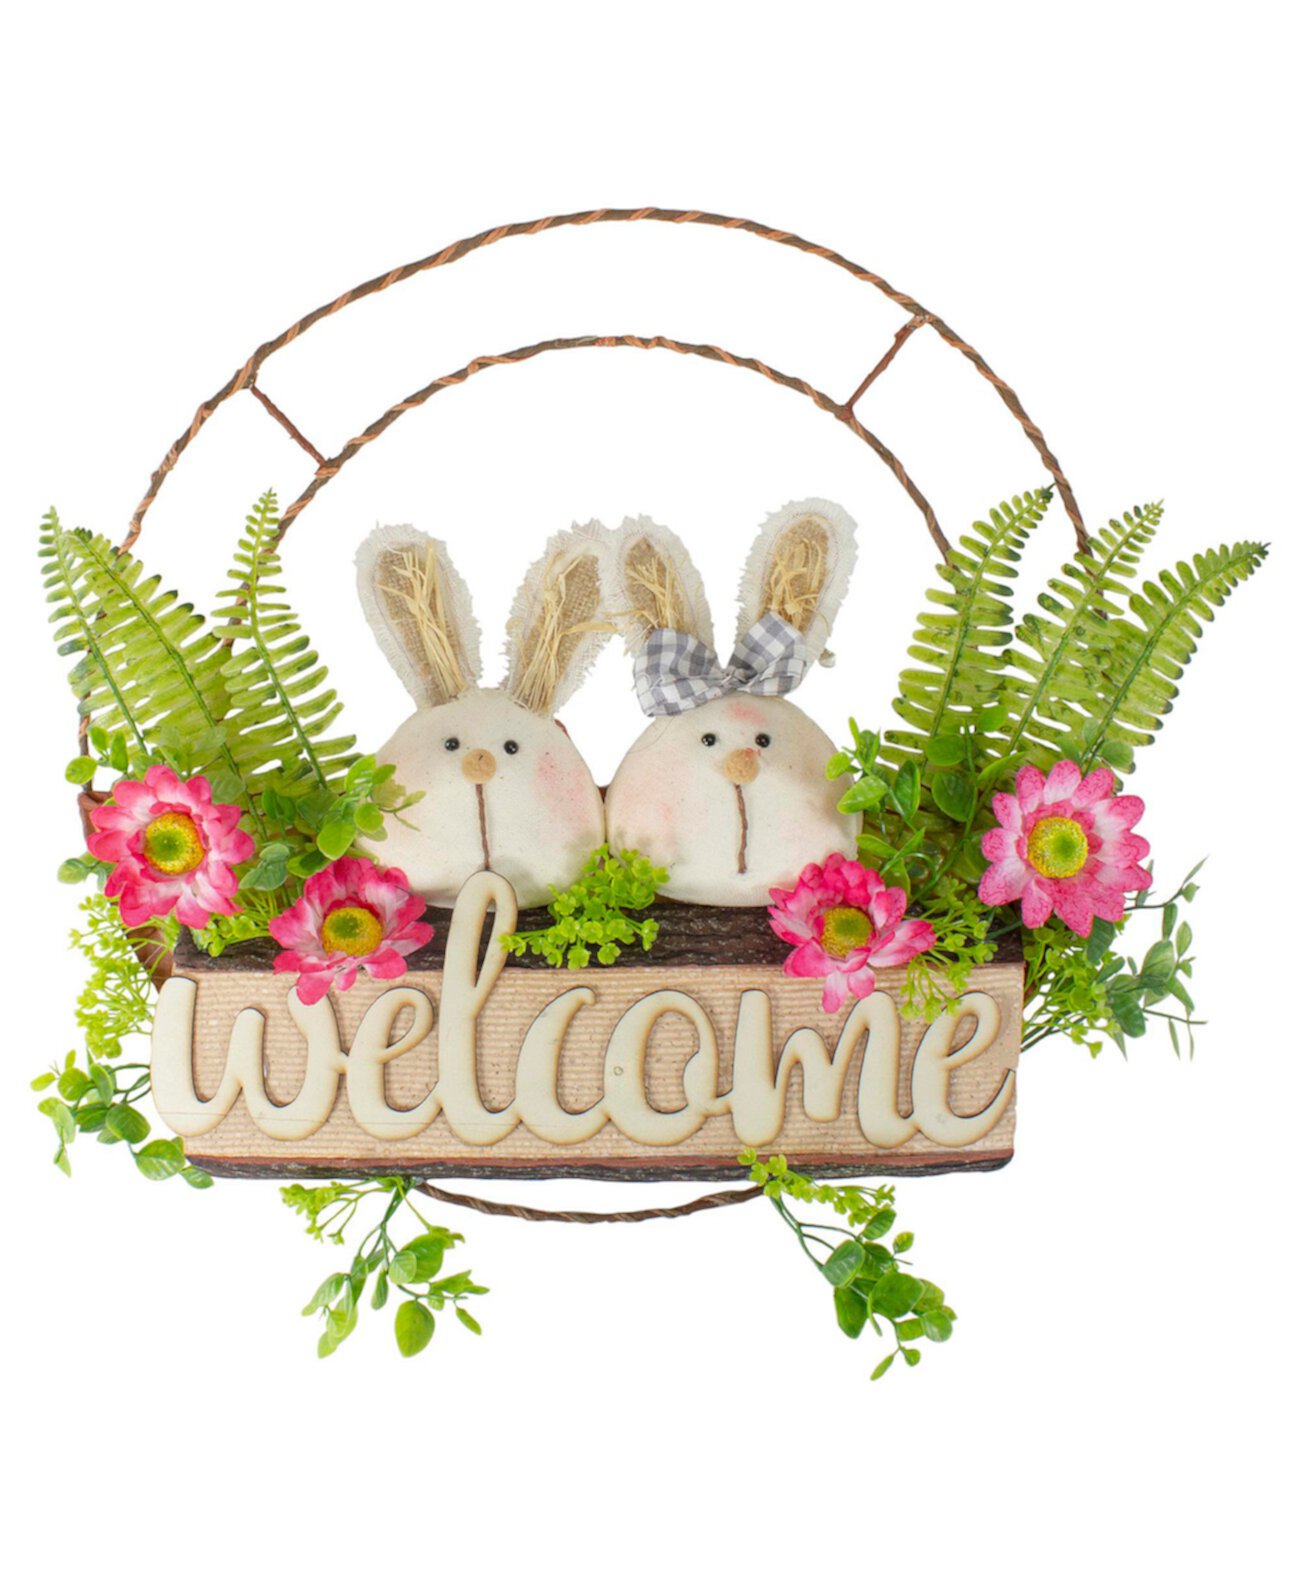 Весенний цветочный венок «Добро пожаловать» для пары кроликов, 19 дюймов, без подсветки Northlight